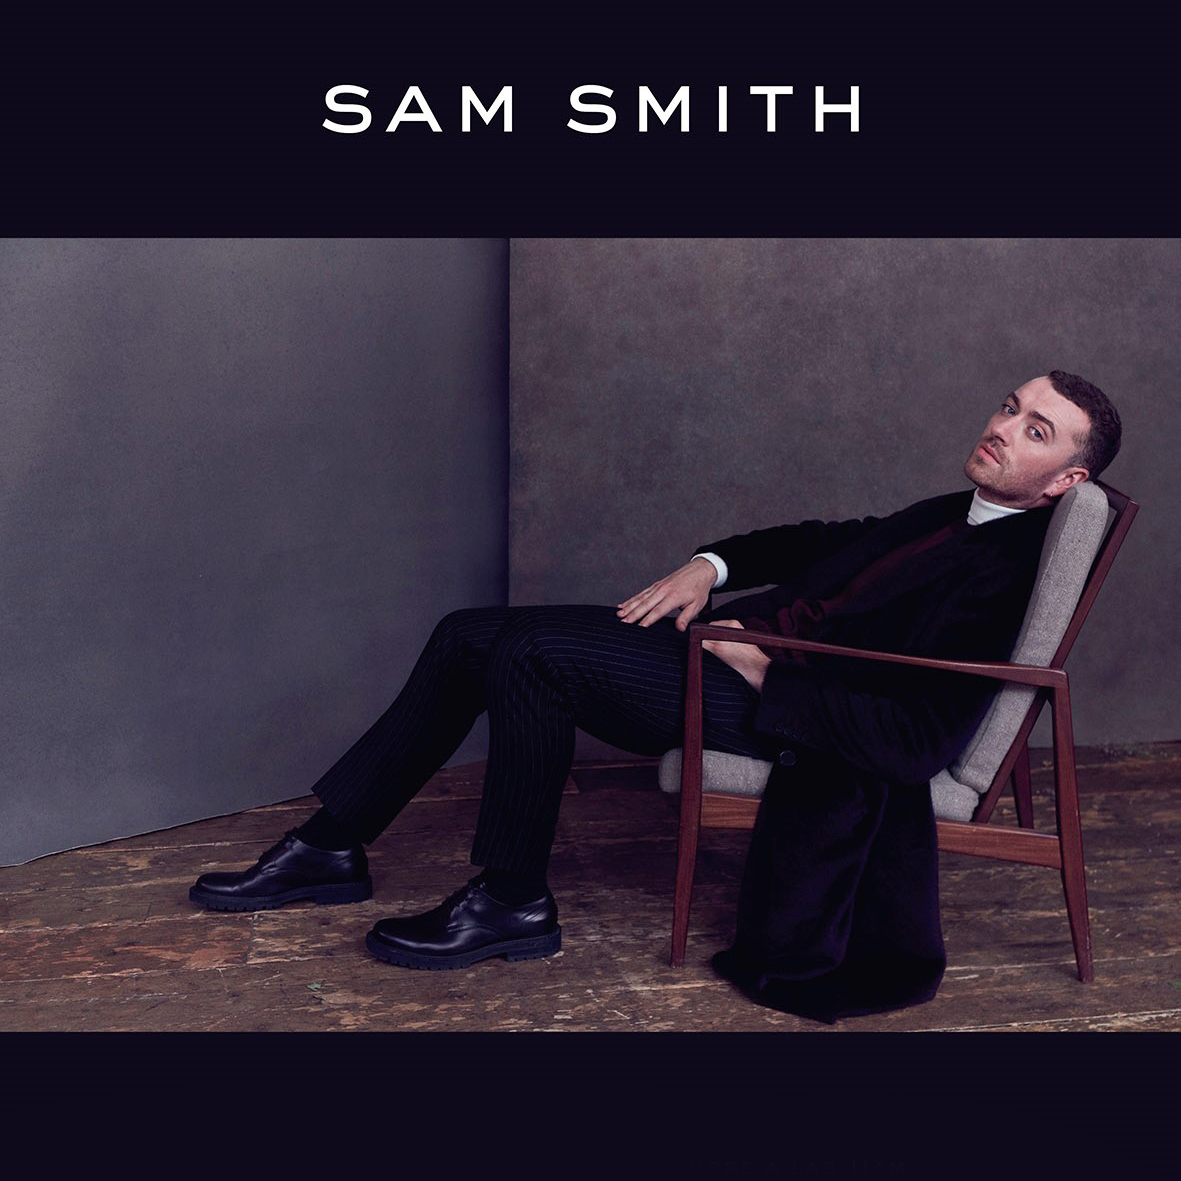 ¡Sam Smith se presentará otra vez en México!